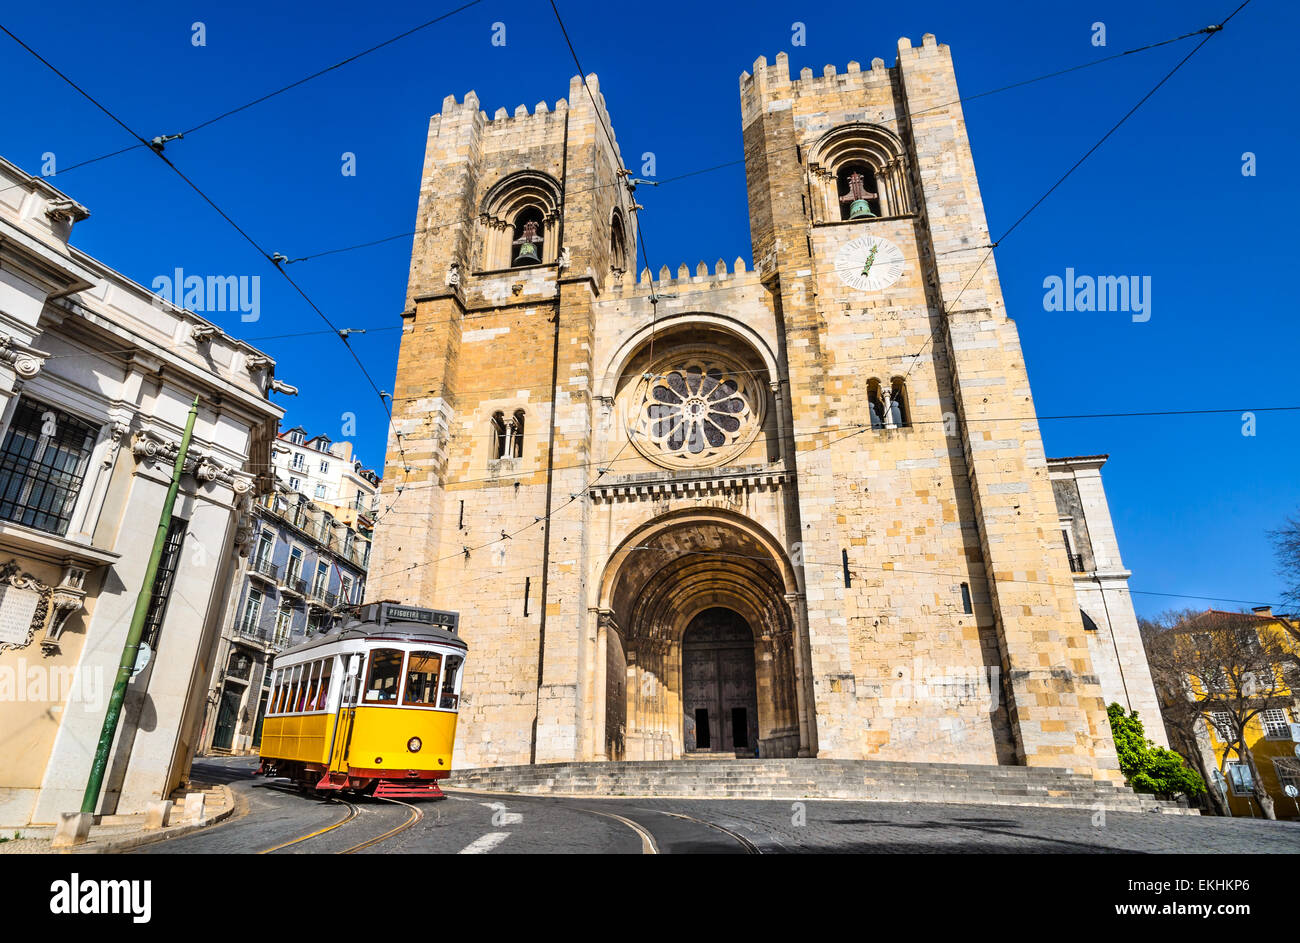 Lisboa, Portugal. La Catedral (la más antigua iglesia, del siglo XII) y tranvía Amarillo (Americanos) Foto de stock